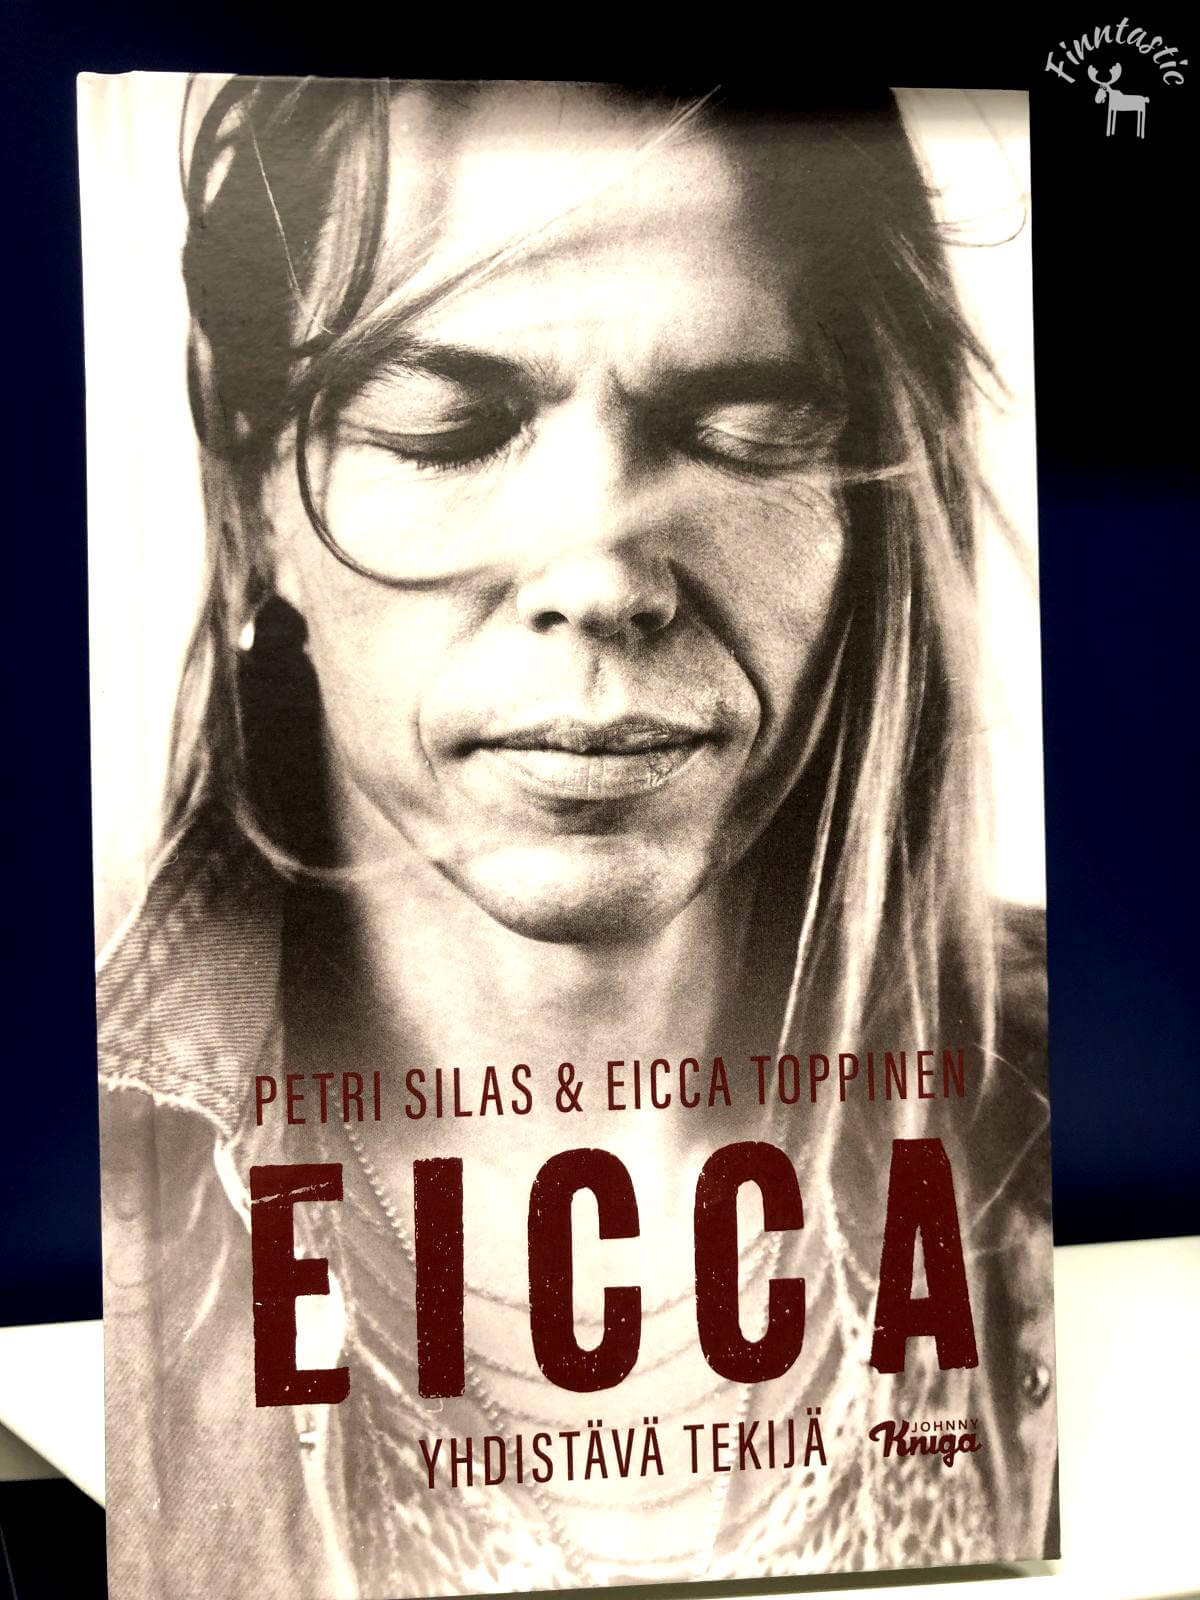 Biografie von Eicca Toppinen